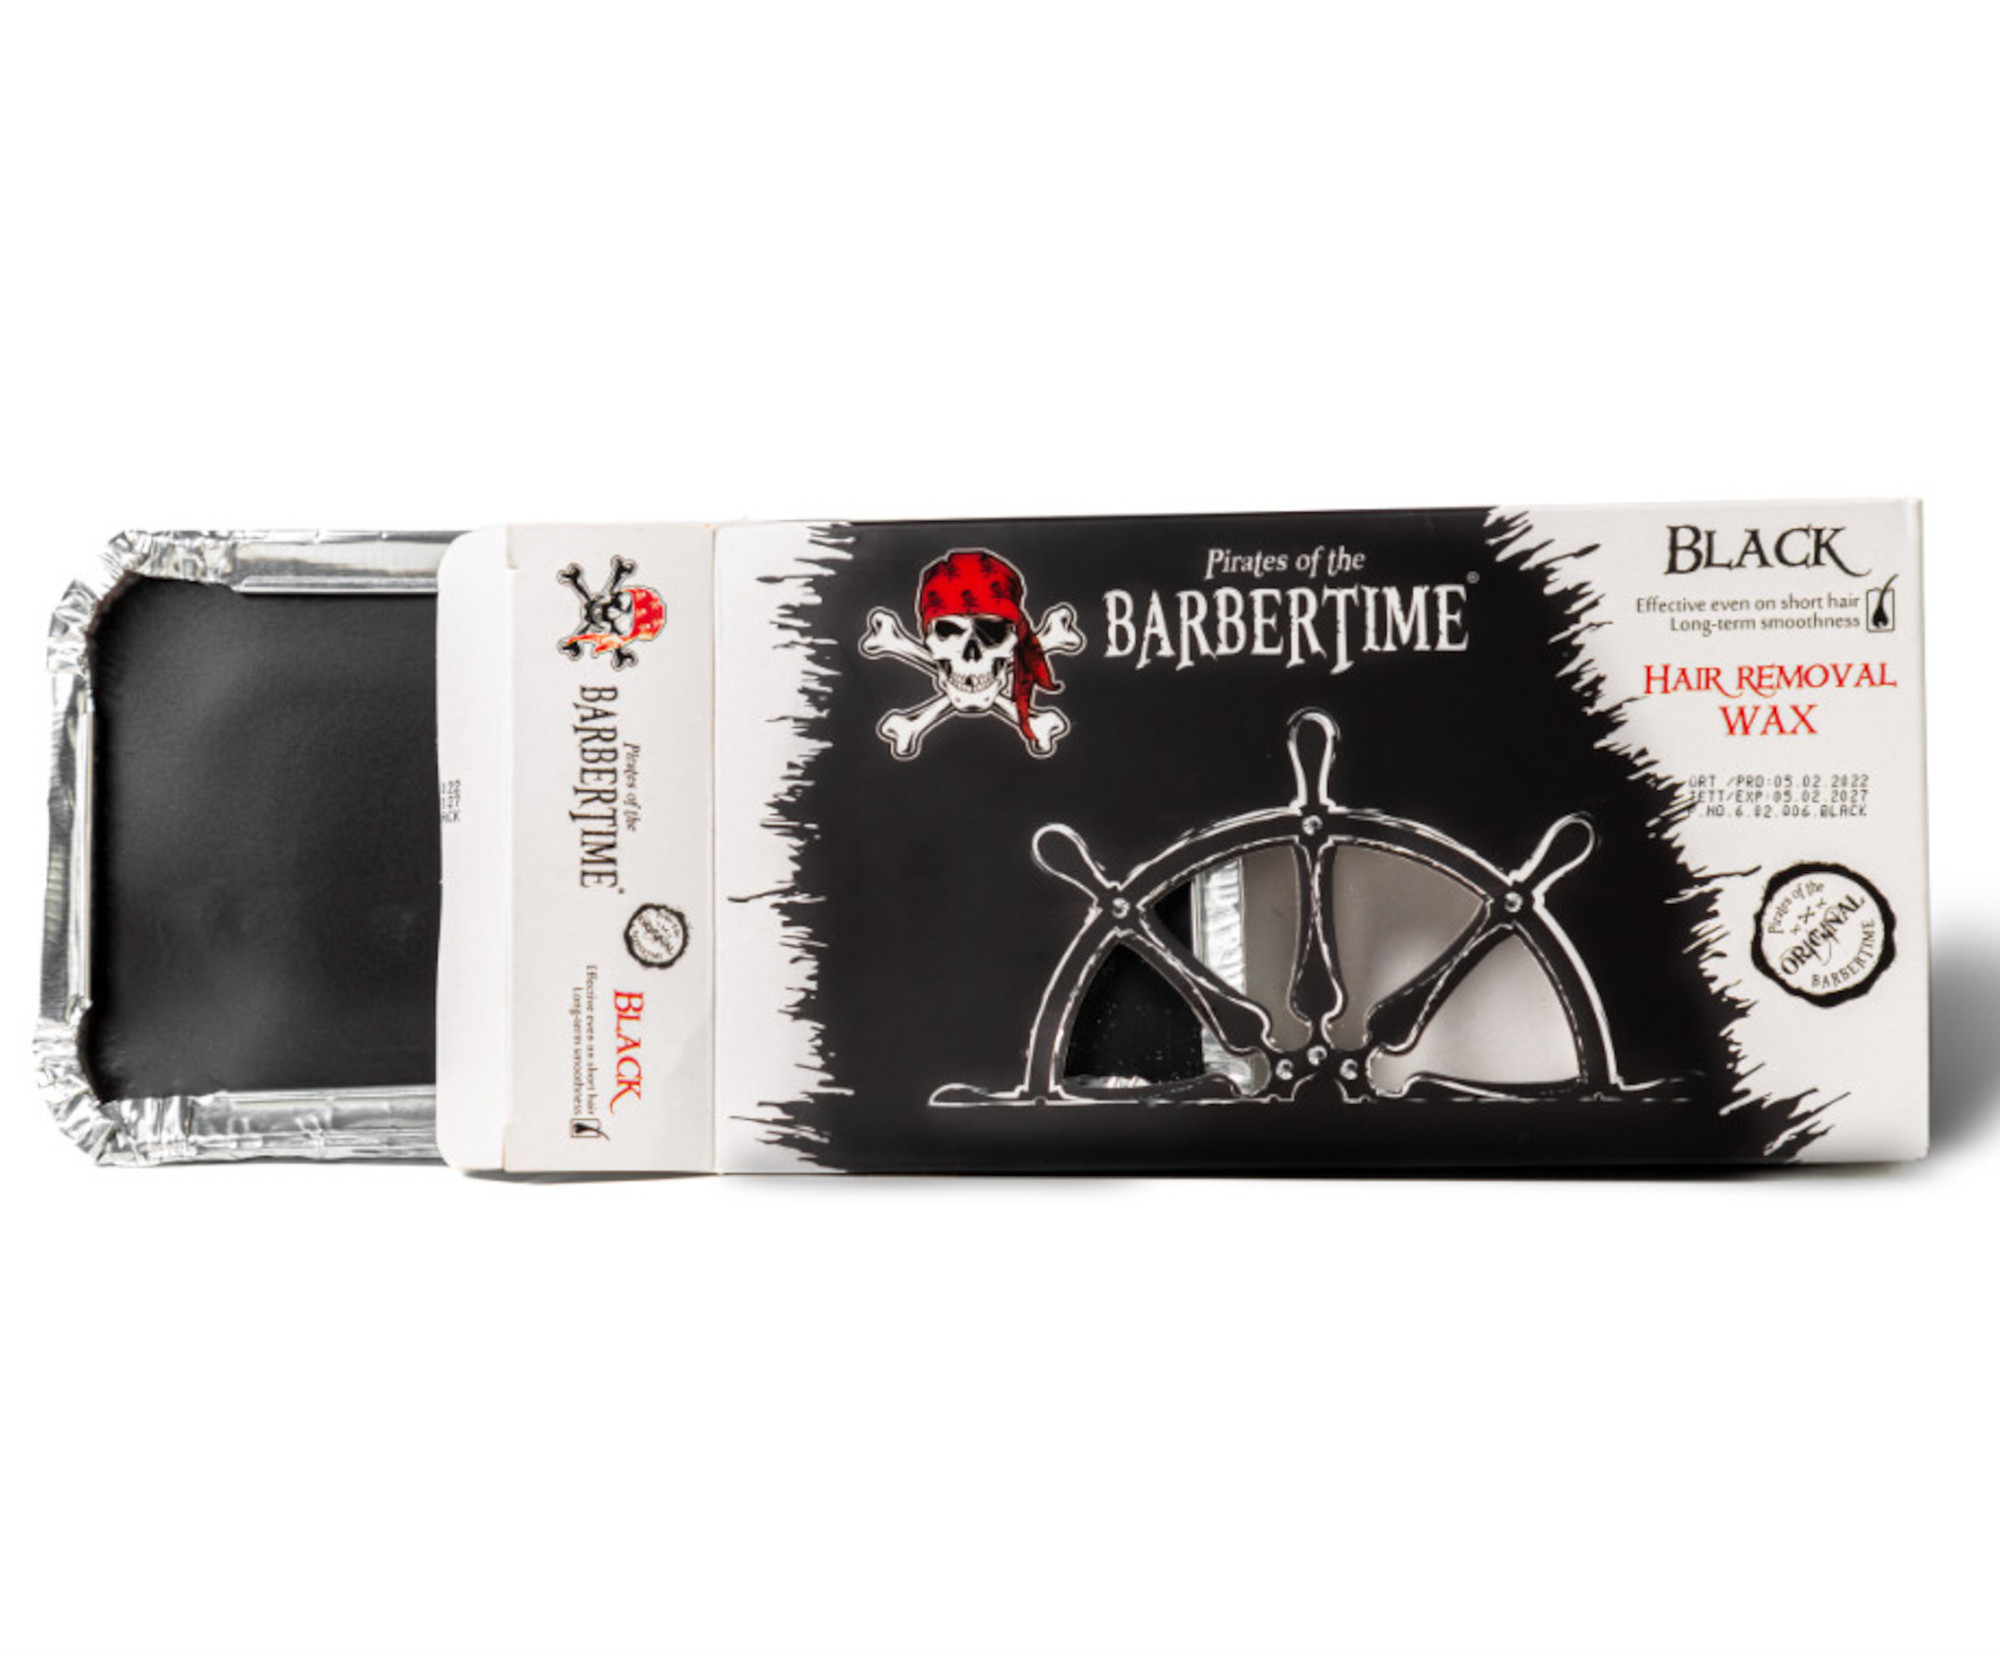 Depilační vosk Pirates of the Barbertime Hard Removal Wax Black - černý, 500 g + dárek zdarma